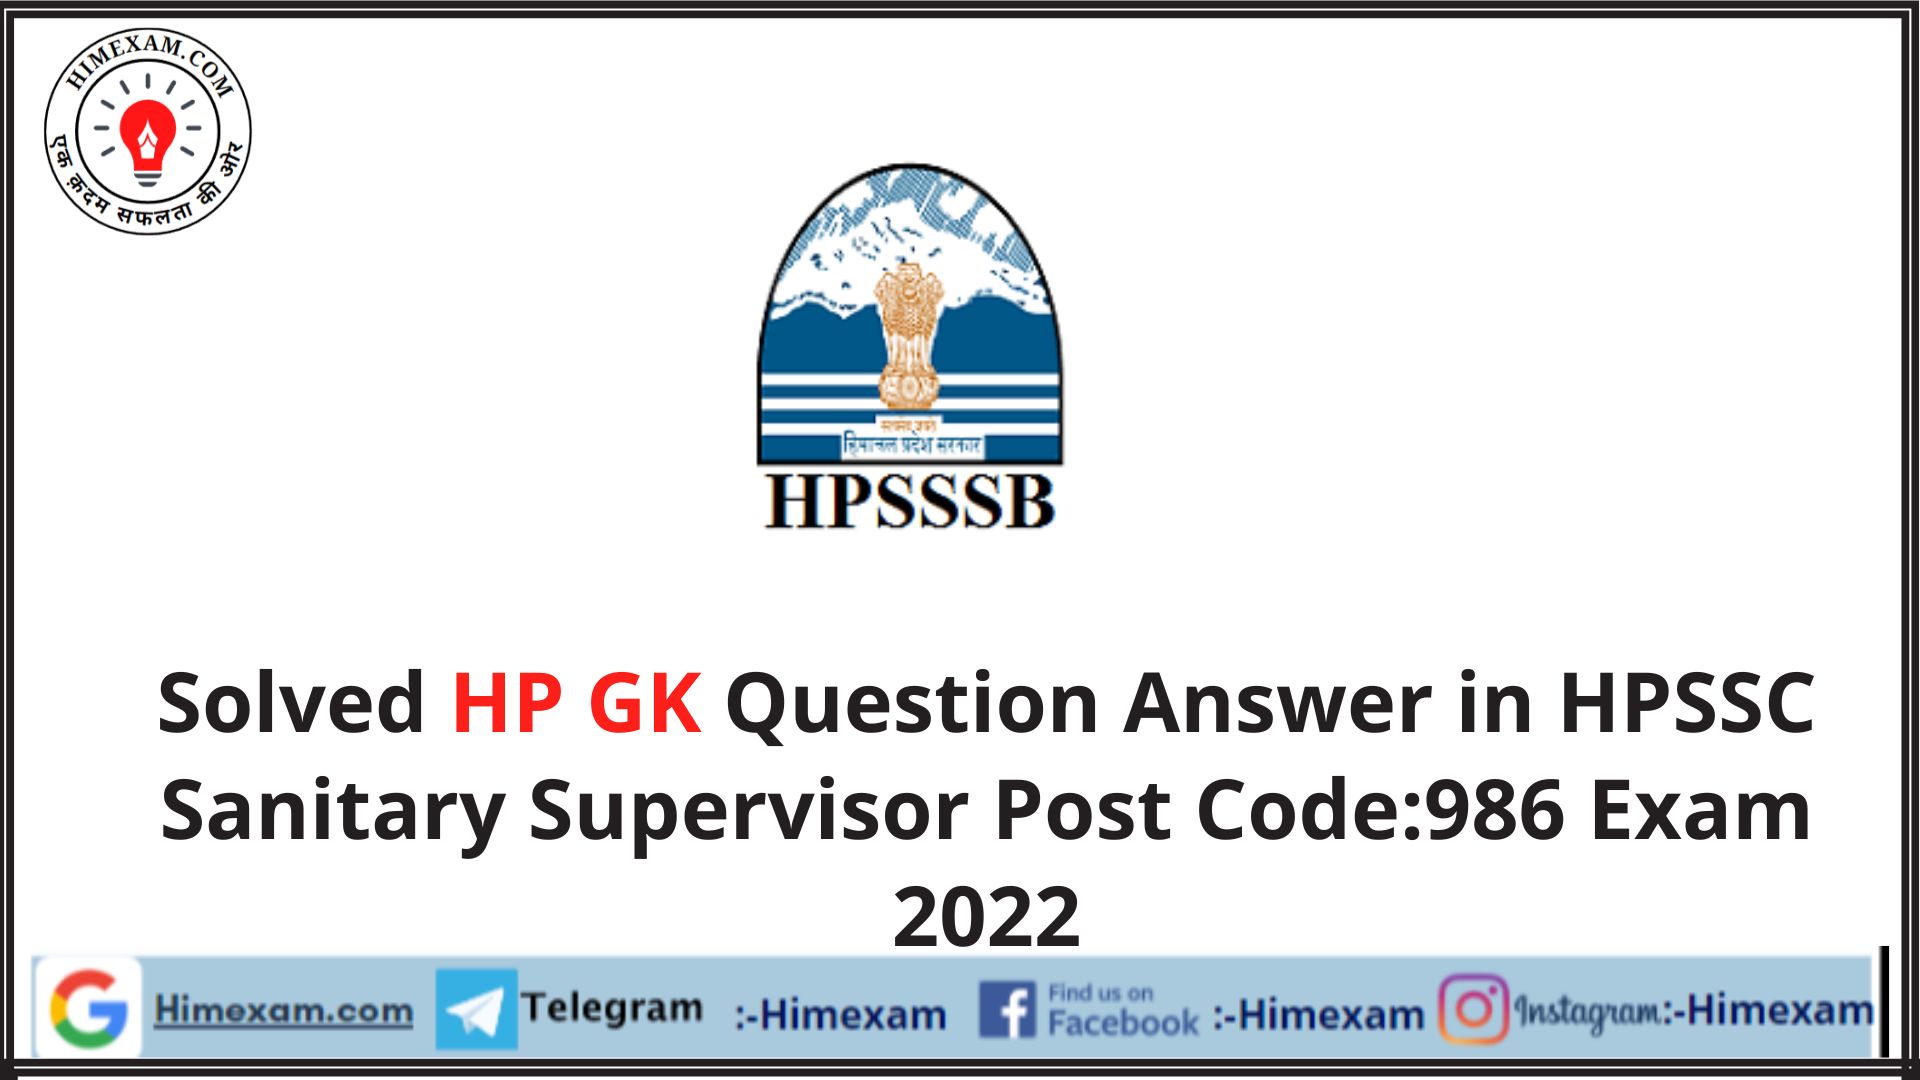 Solved HP GK Question Answer in HPSSC Sanitary Supervisor Post Code:986 Exam 2022